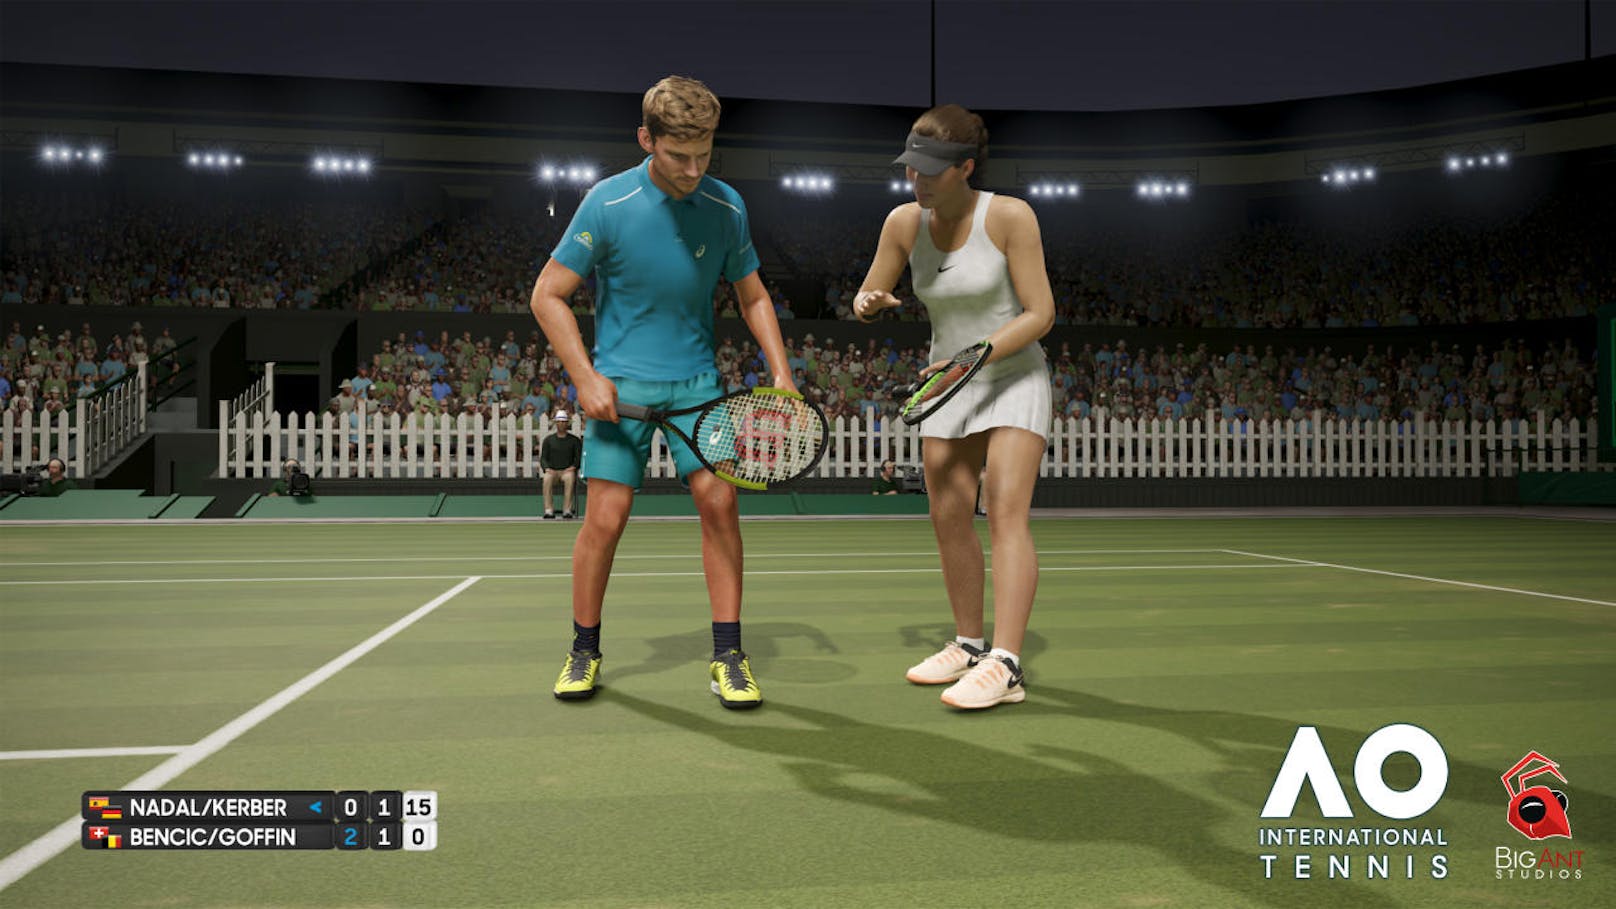 Wenn man über das etwas holprige Gameplay hinwegsieht, dann bietet der Karriere-Modus eine coole Herausforderung für Tennis-Liebhaber.